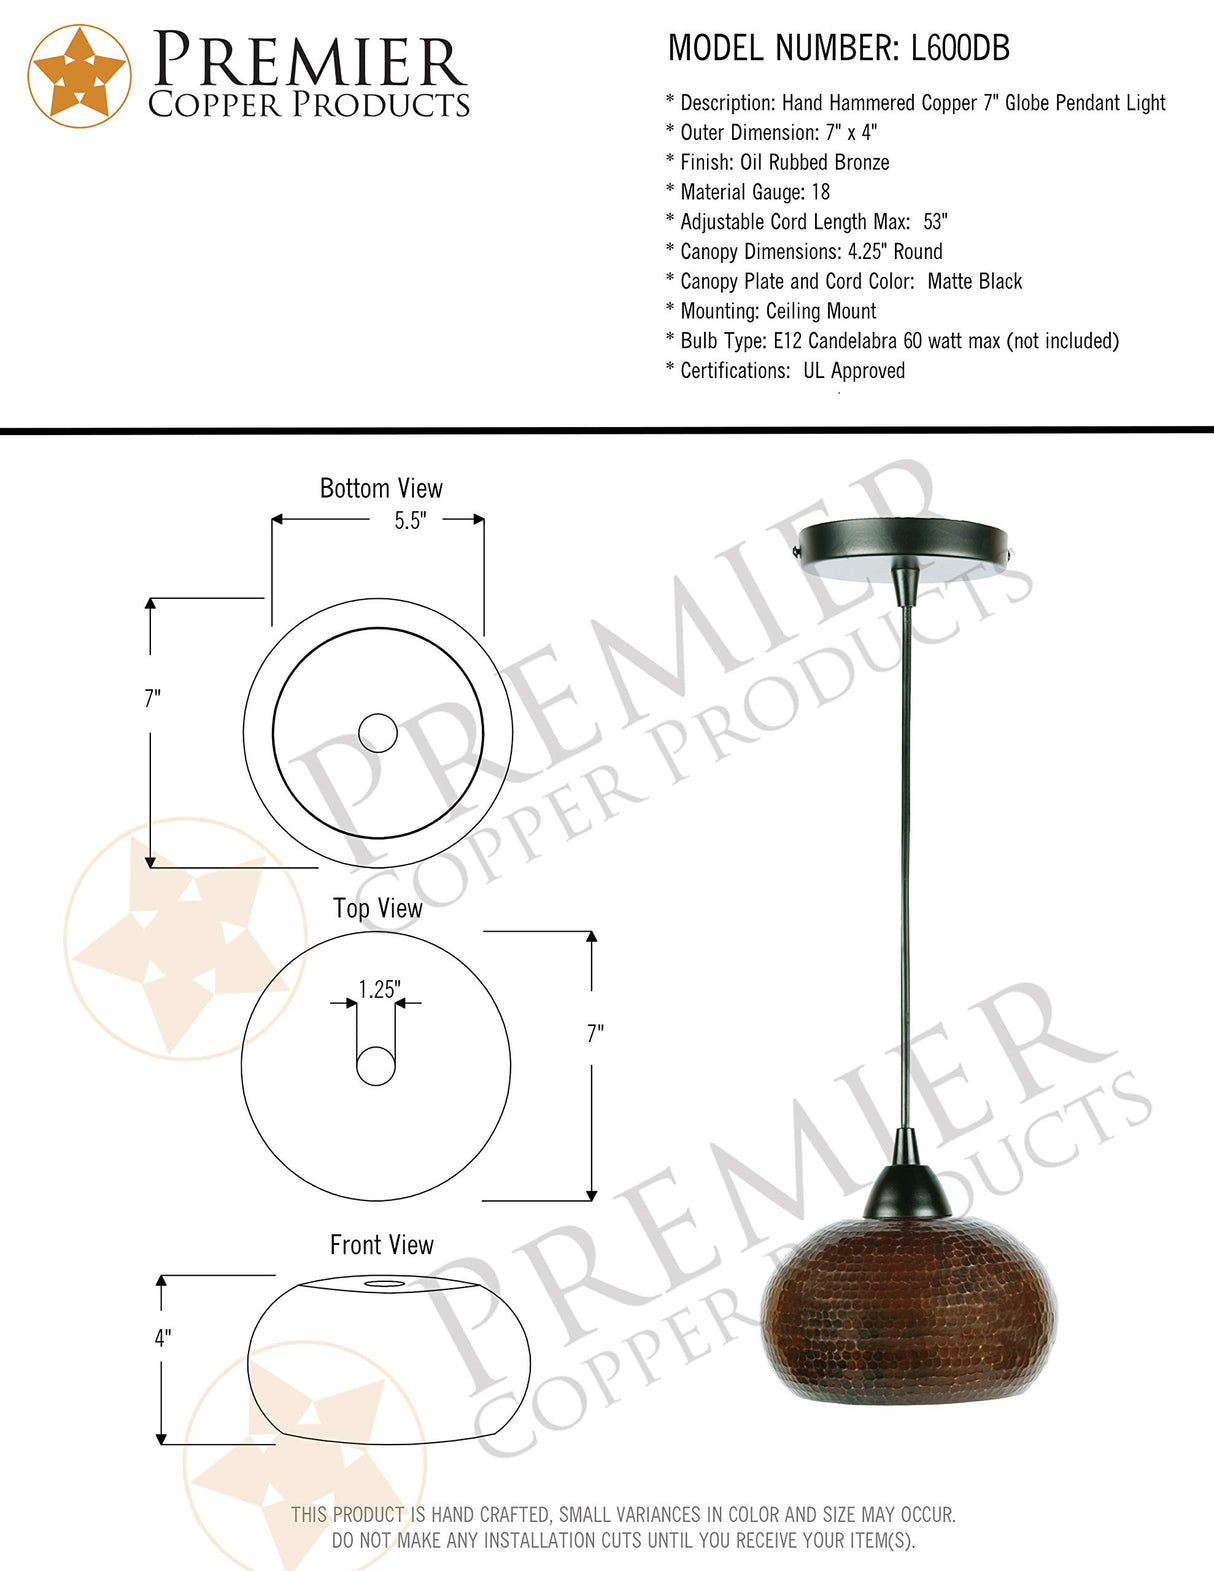 Premier Copper Products L600DB Copper 7-inch Globe Pendant Light, Oil Rubbed Bronze